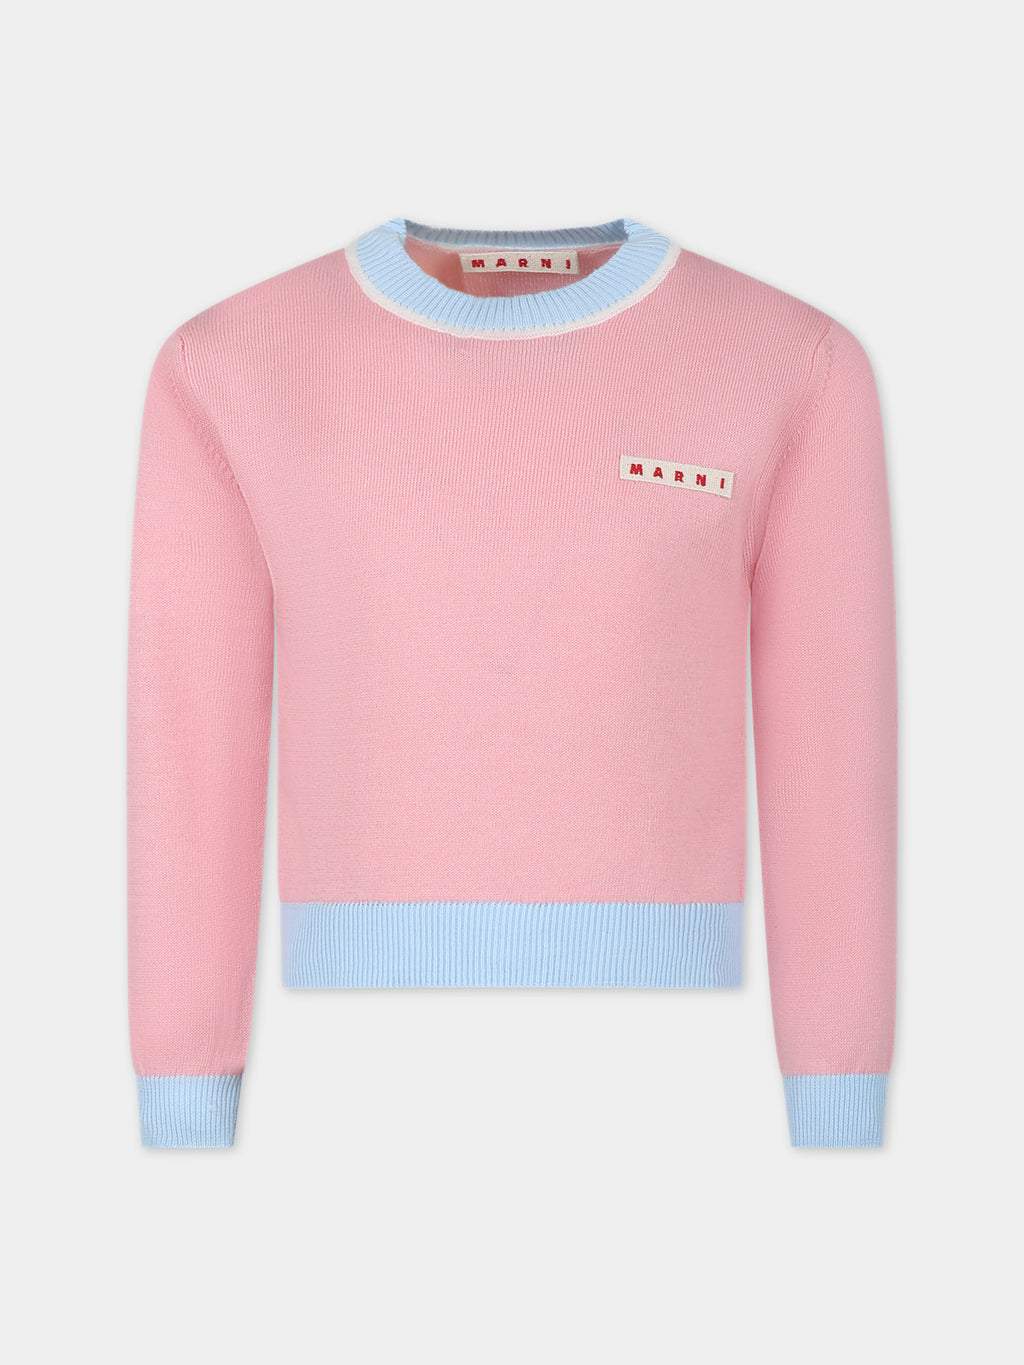 Maglione rosa per bambina con logo